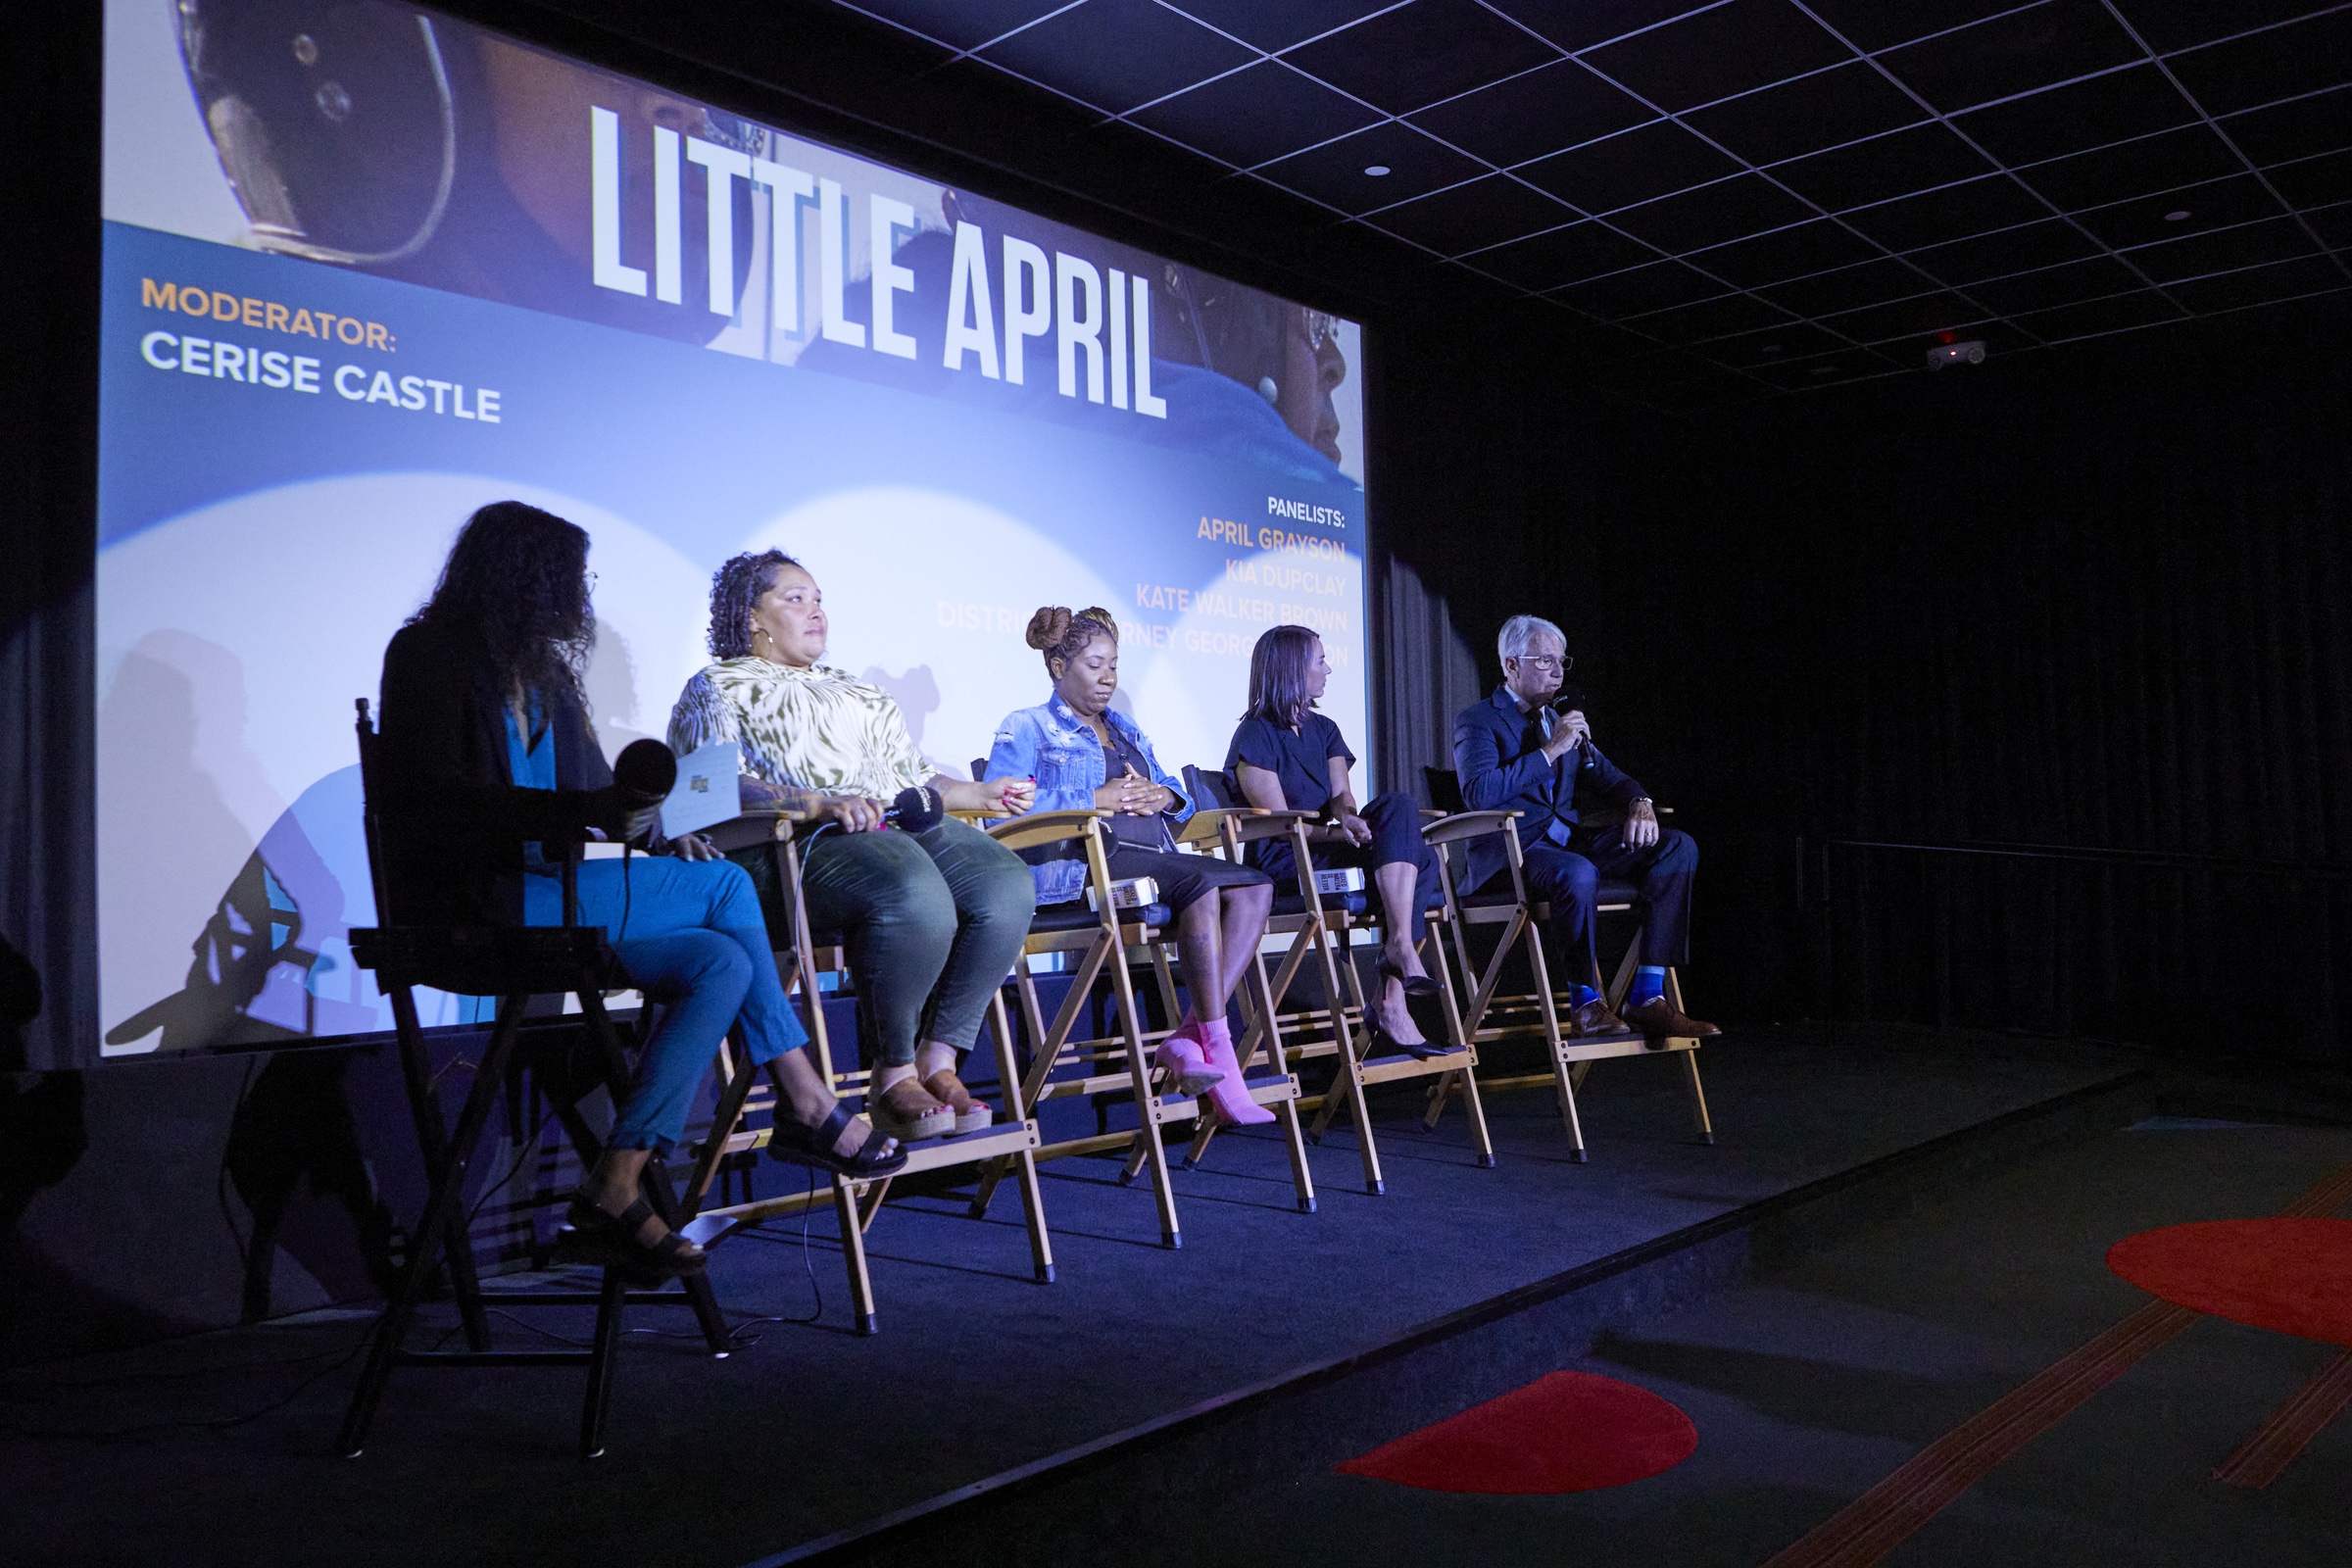 Little April premiere event